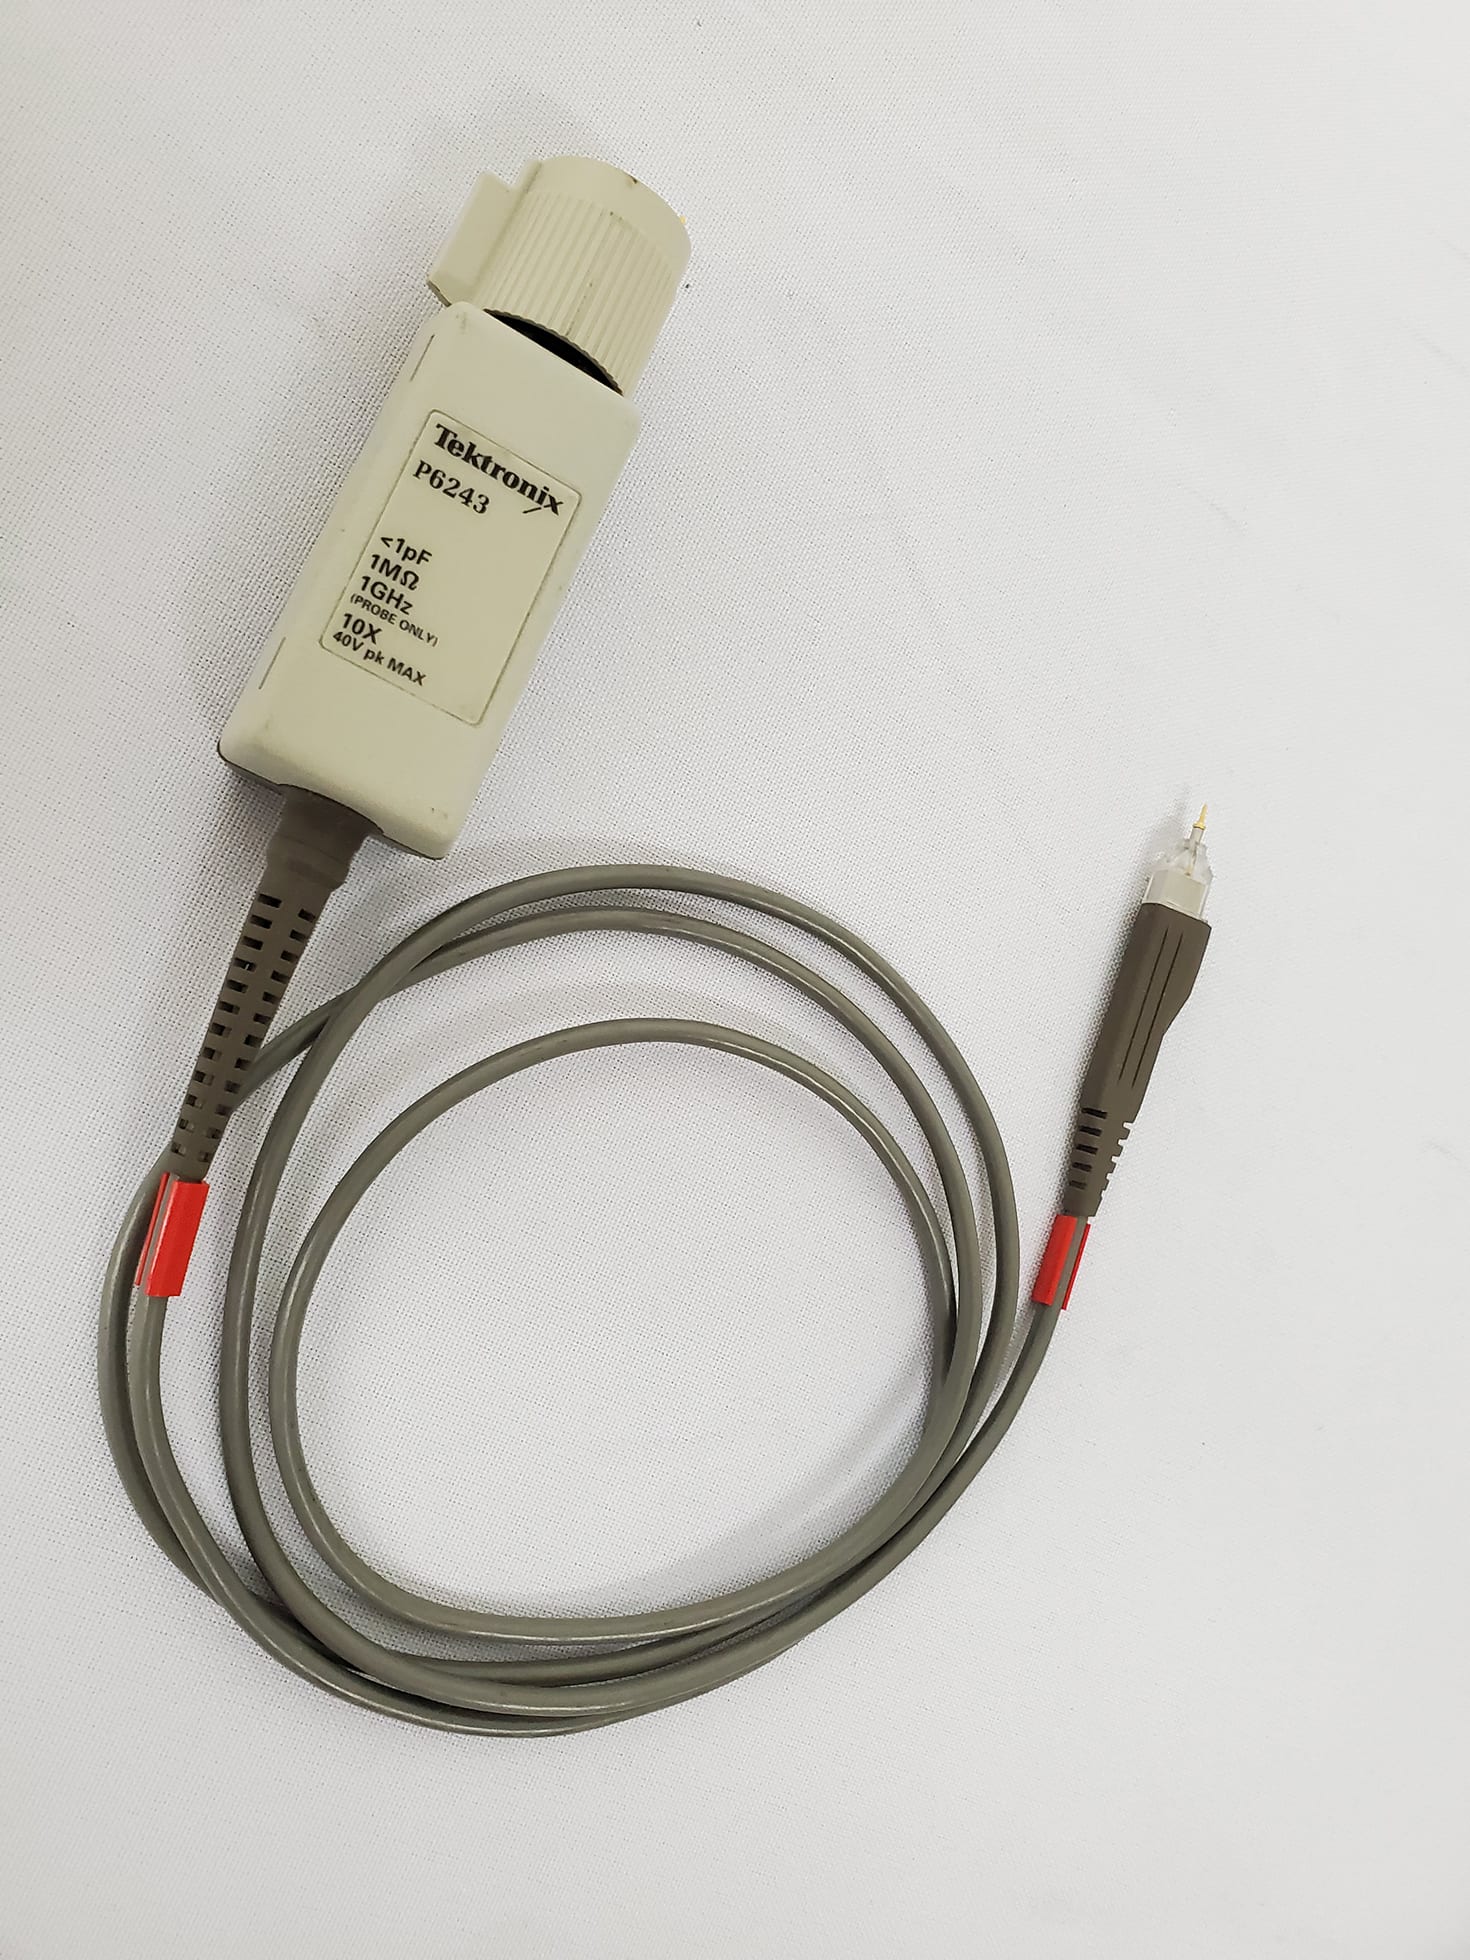 Buy Tektronix-P 6243-Active Oscilloscope Probe-58234 Online